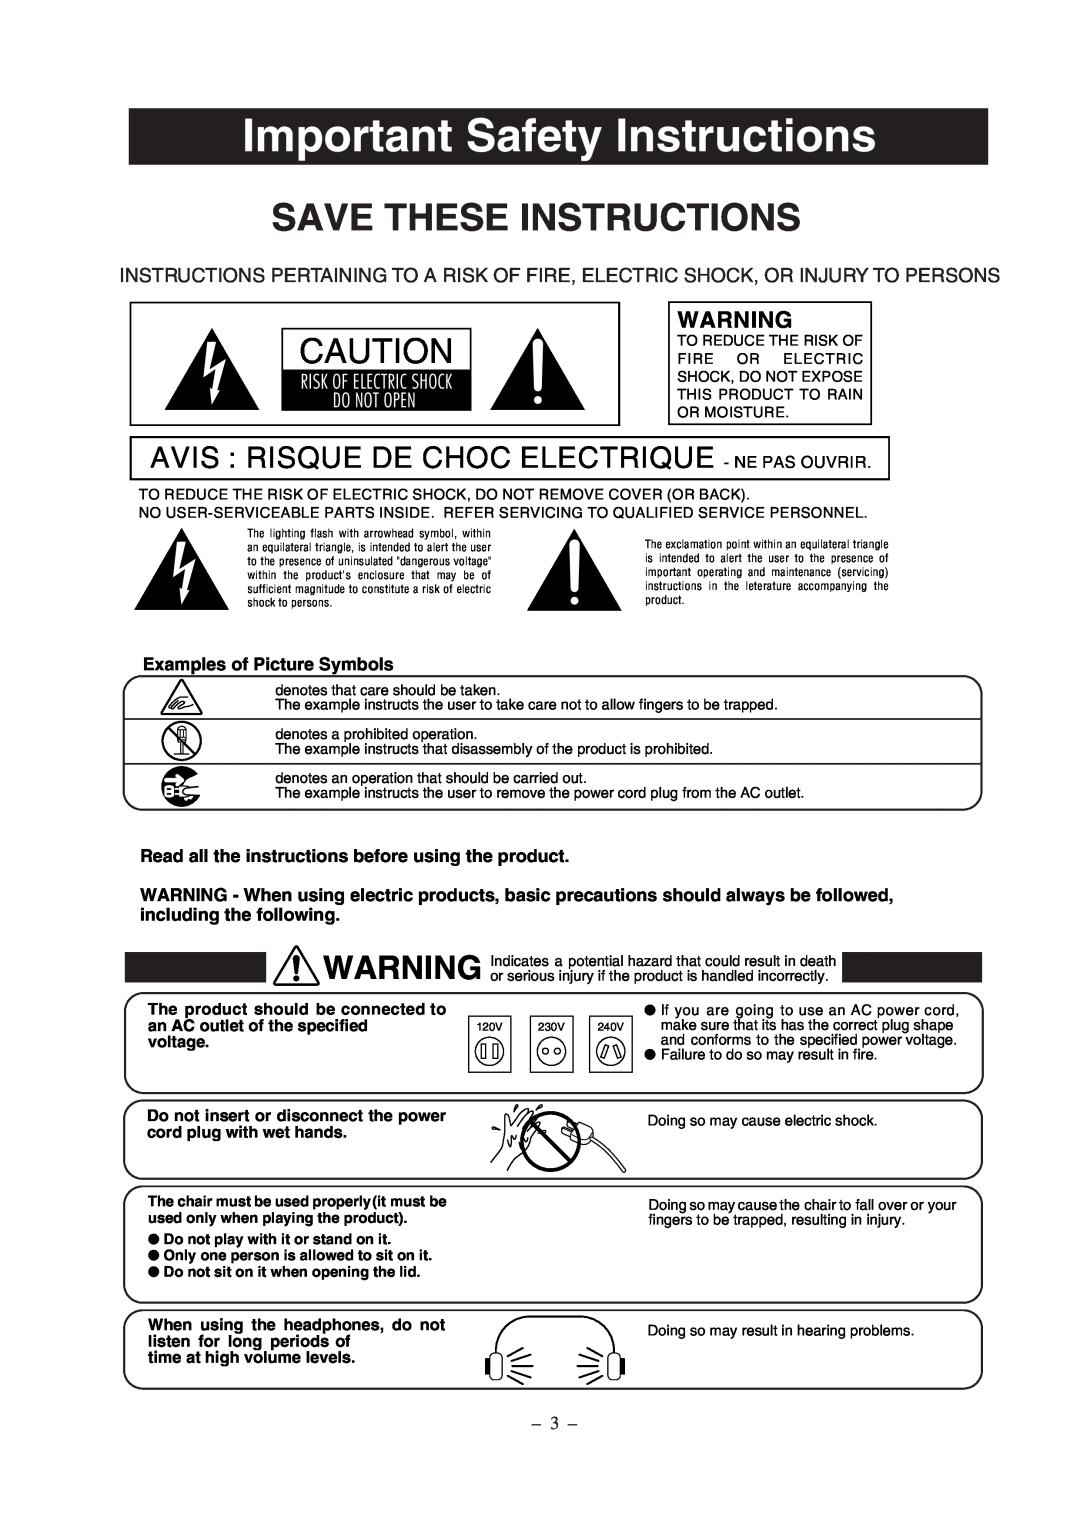 Kawai CP67 manual Important Safety Instructions, Save These Instructions, Avis Risque De Choc Electrique - Ne Pas Ouvrir 